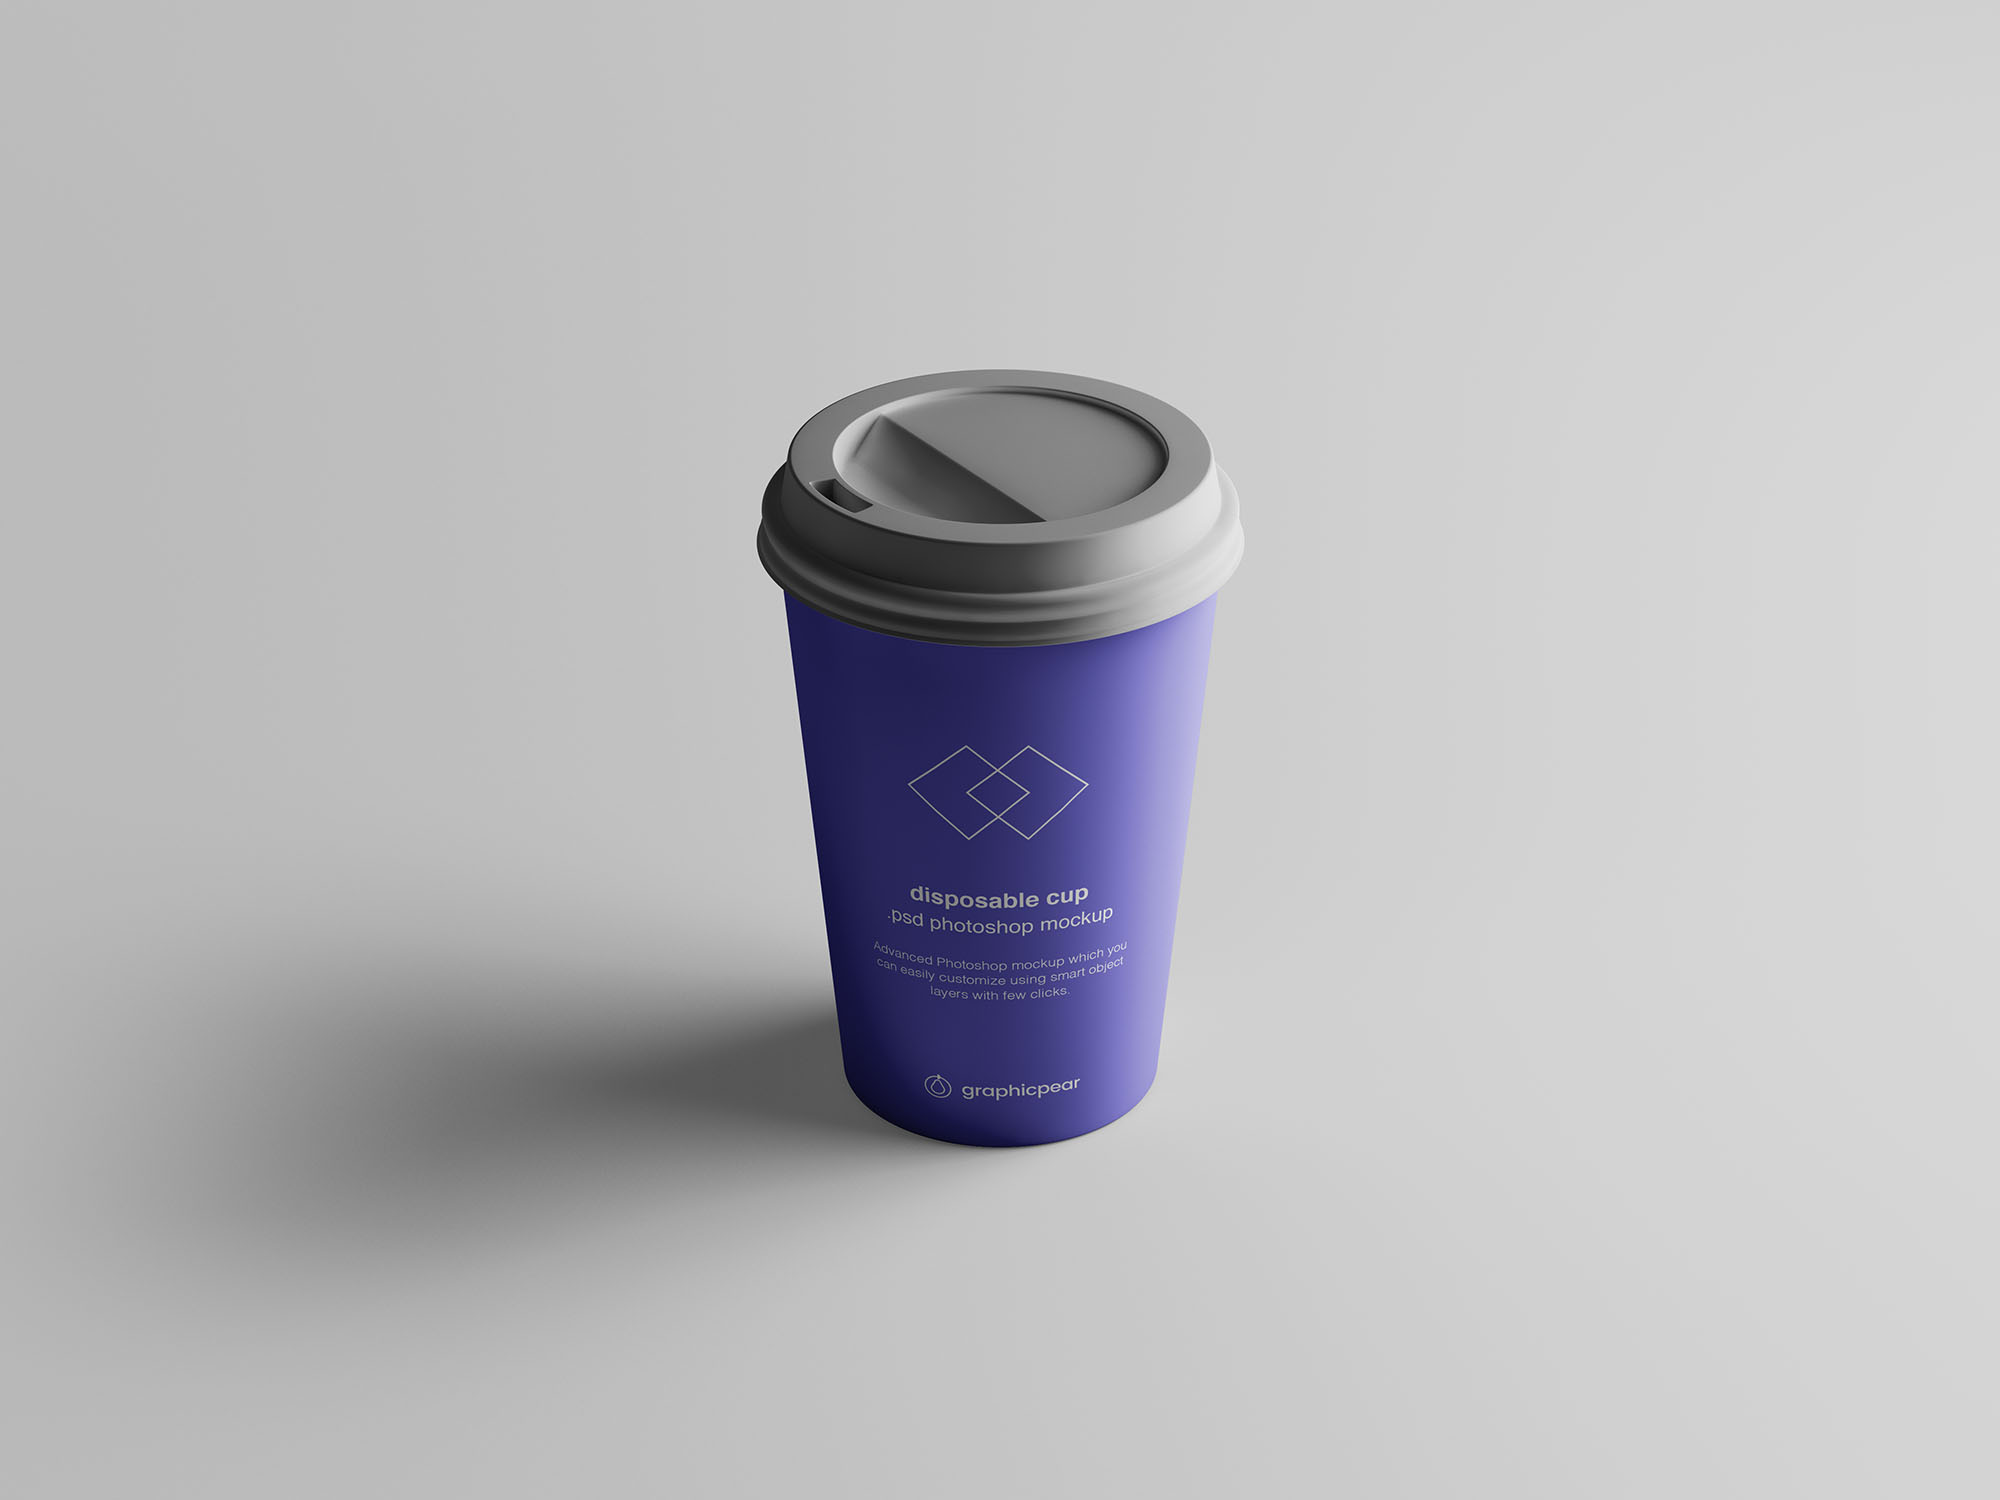 7个咖啡纸杯定制外观设计效果图样机模板 7 Coffee Cup Mockups插图(2)